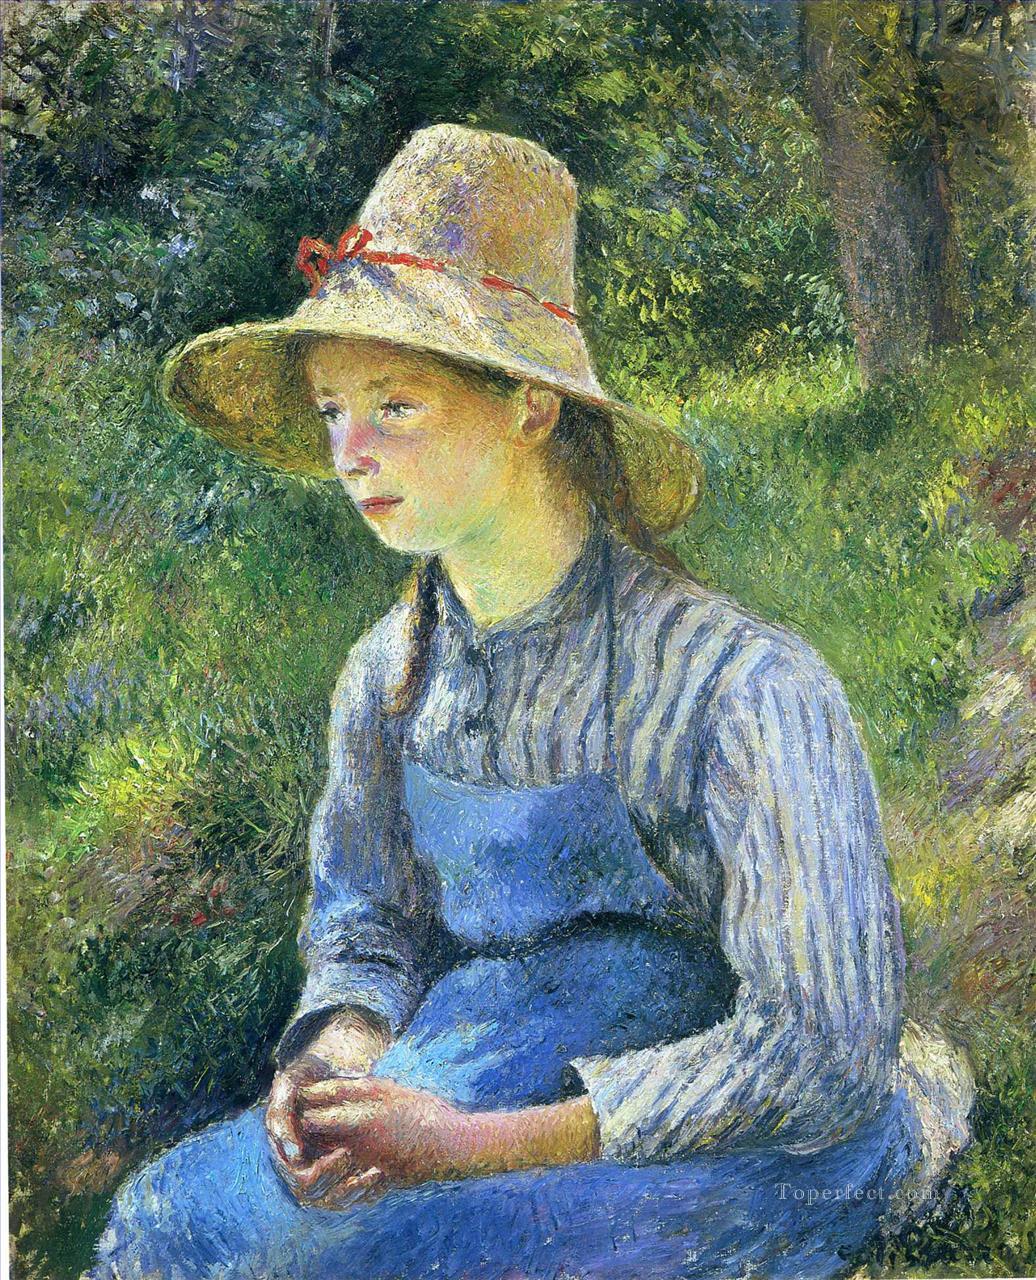 帽子をかぶった若い農民の少女 1881年 カミーユ・ピサロ油絵